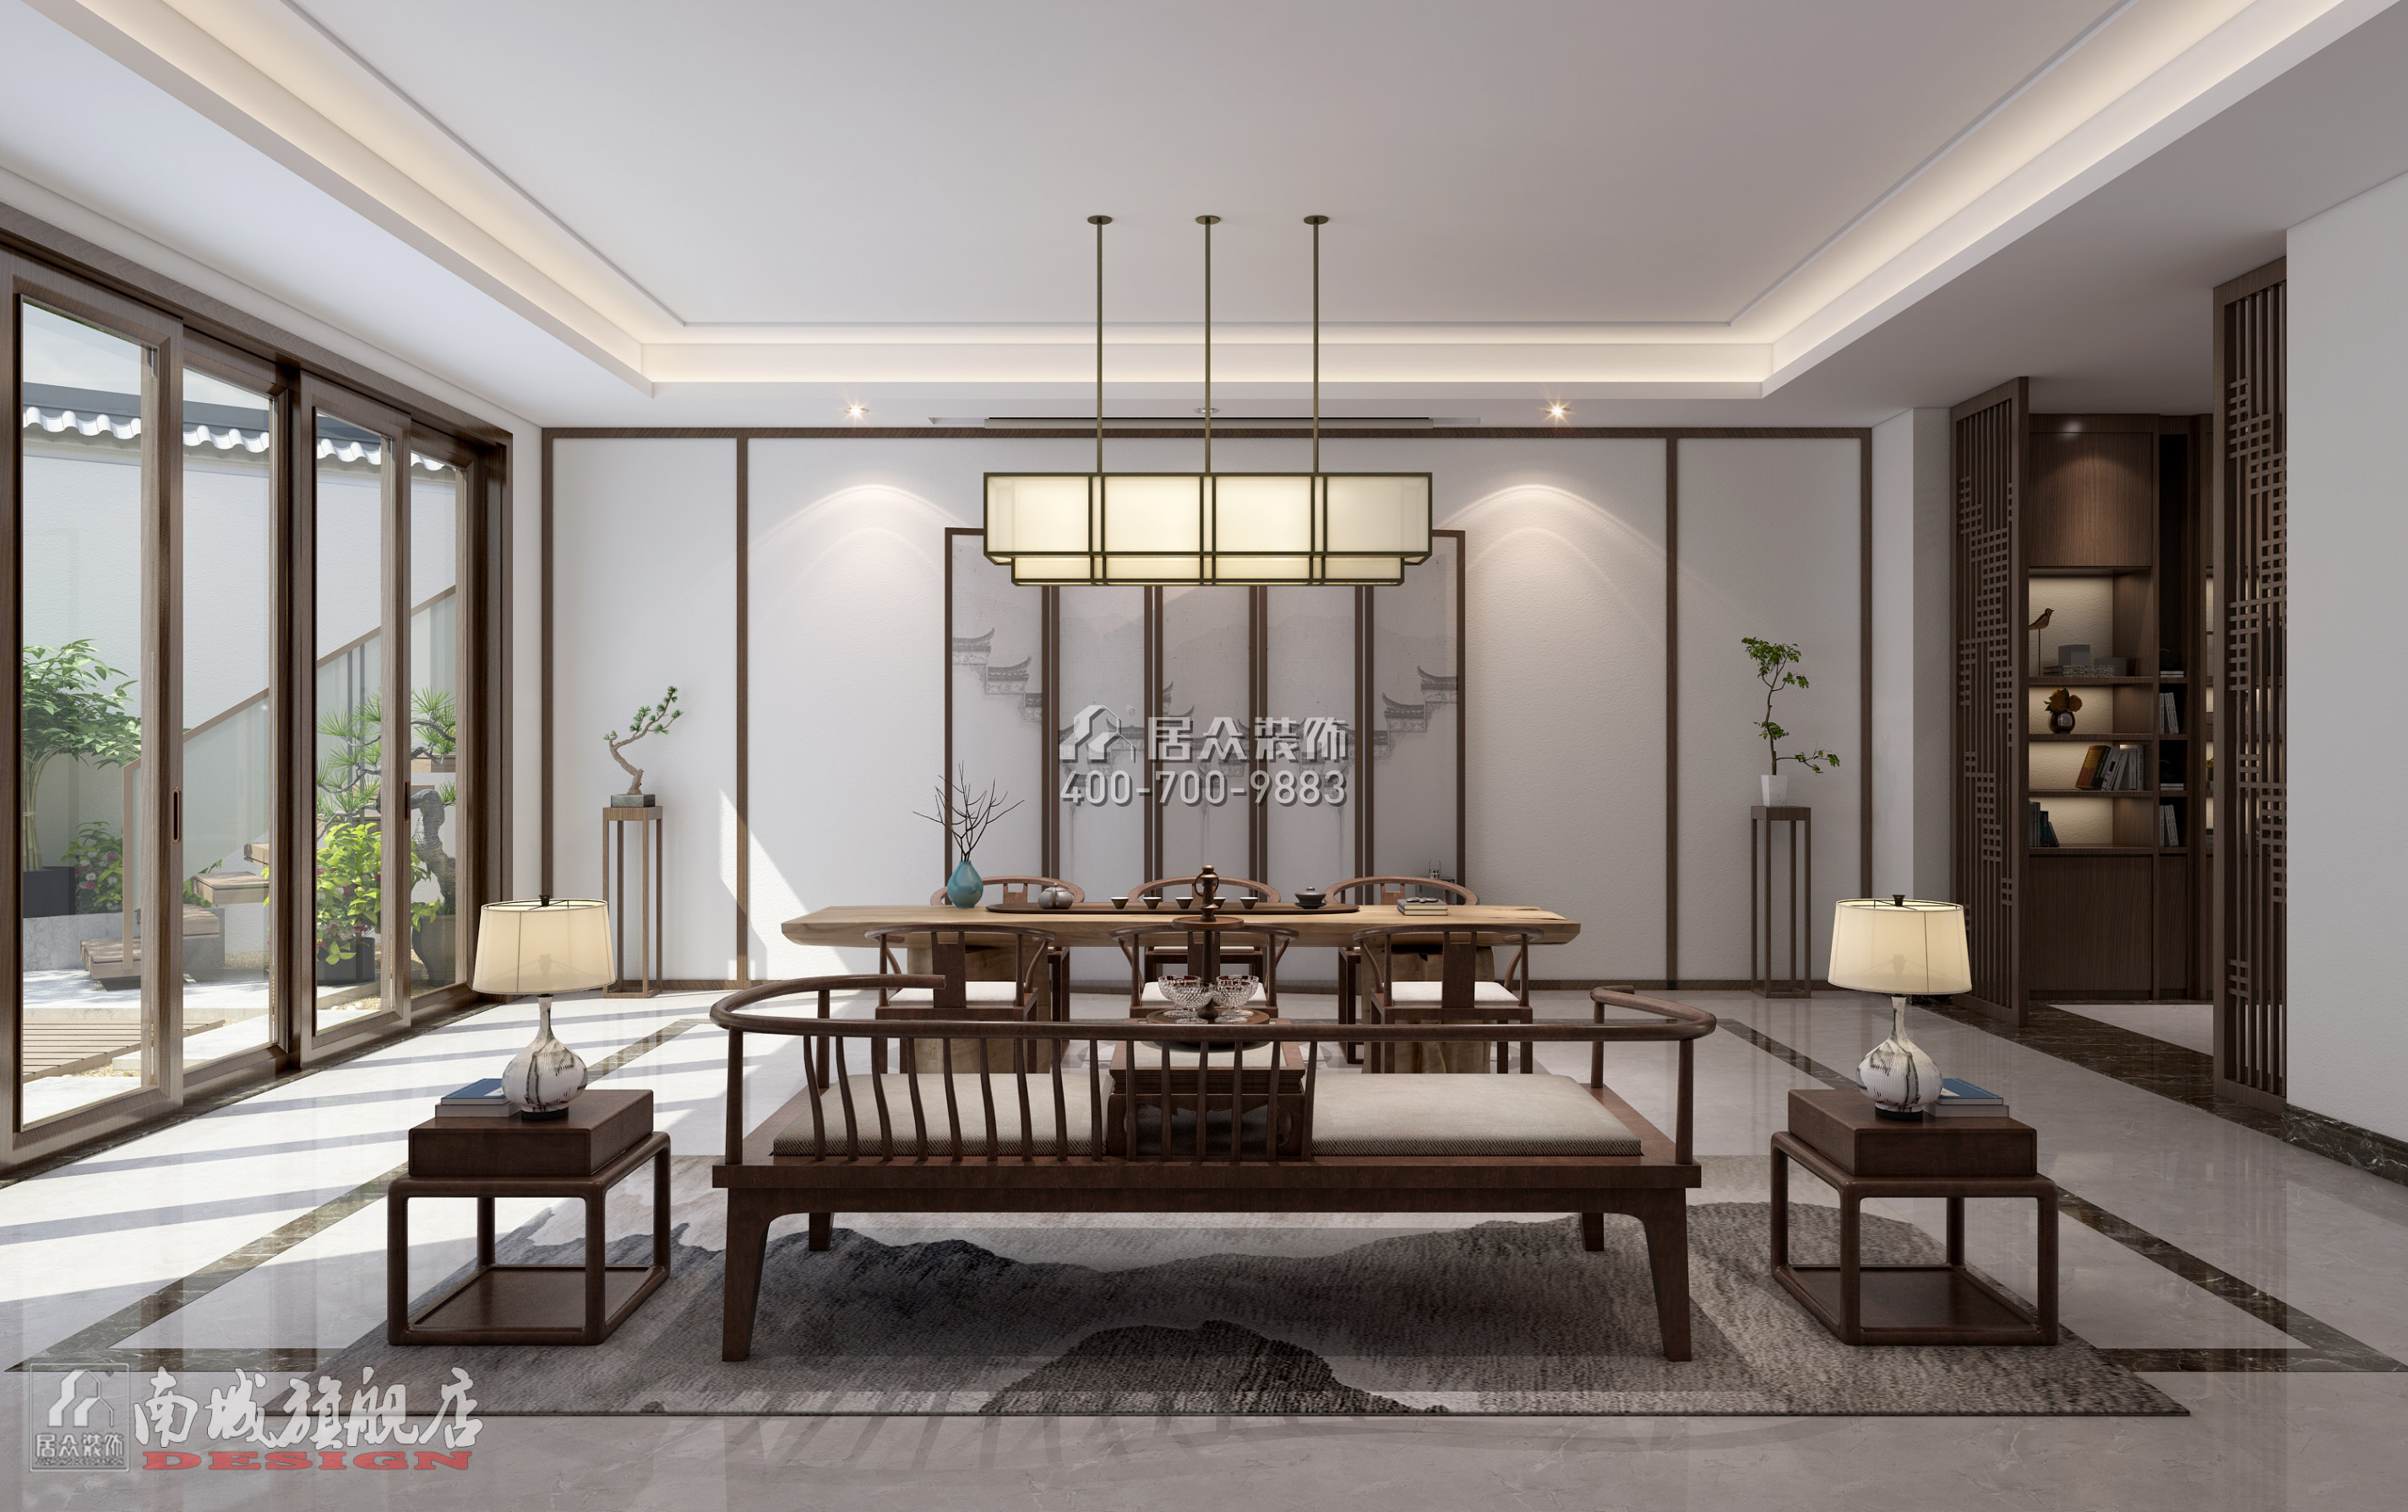 星语林·汀湘十里500平方米中式风格别墅户型客厅装修效果图